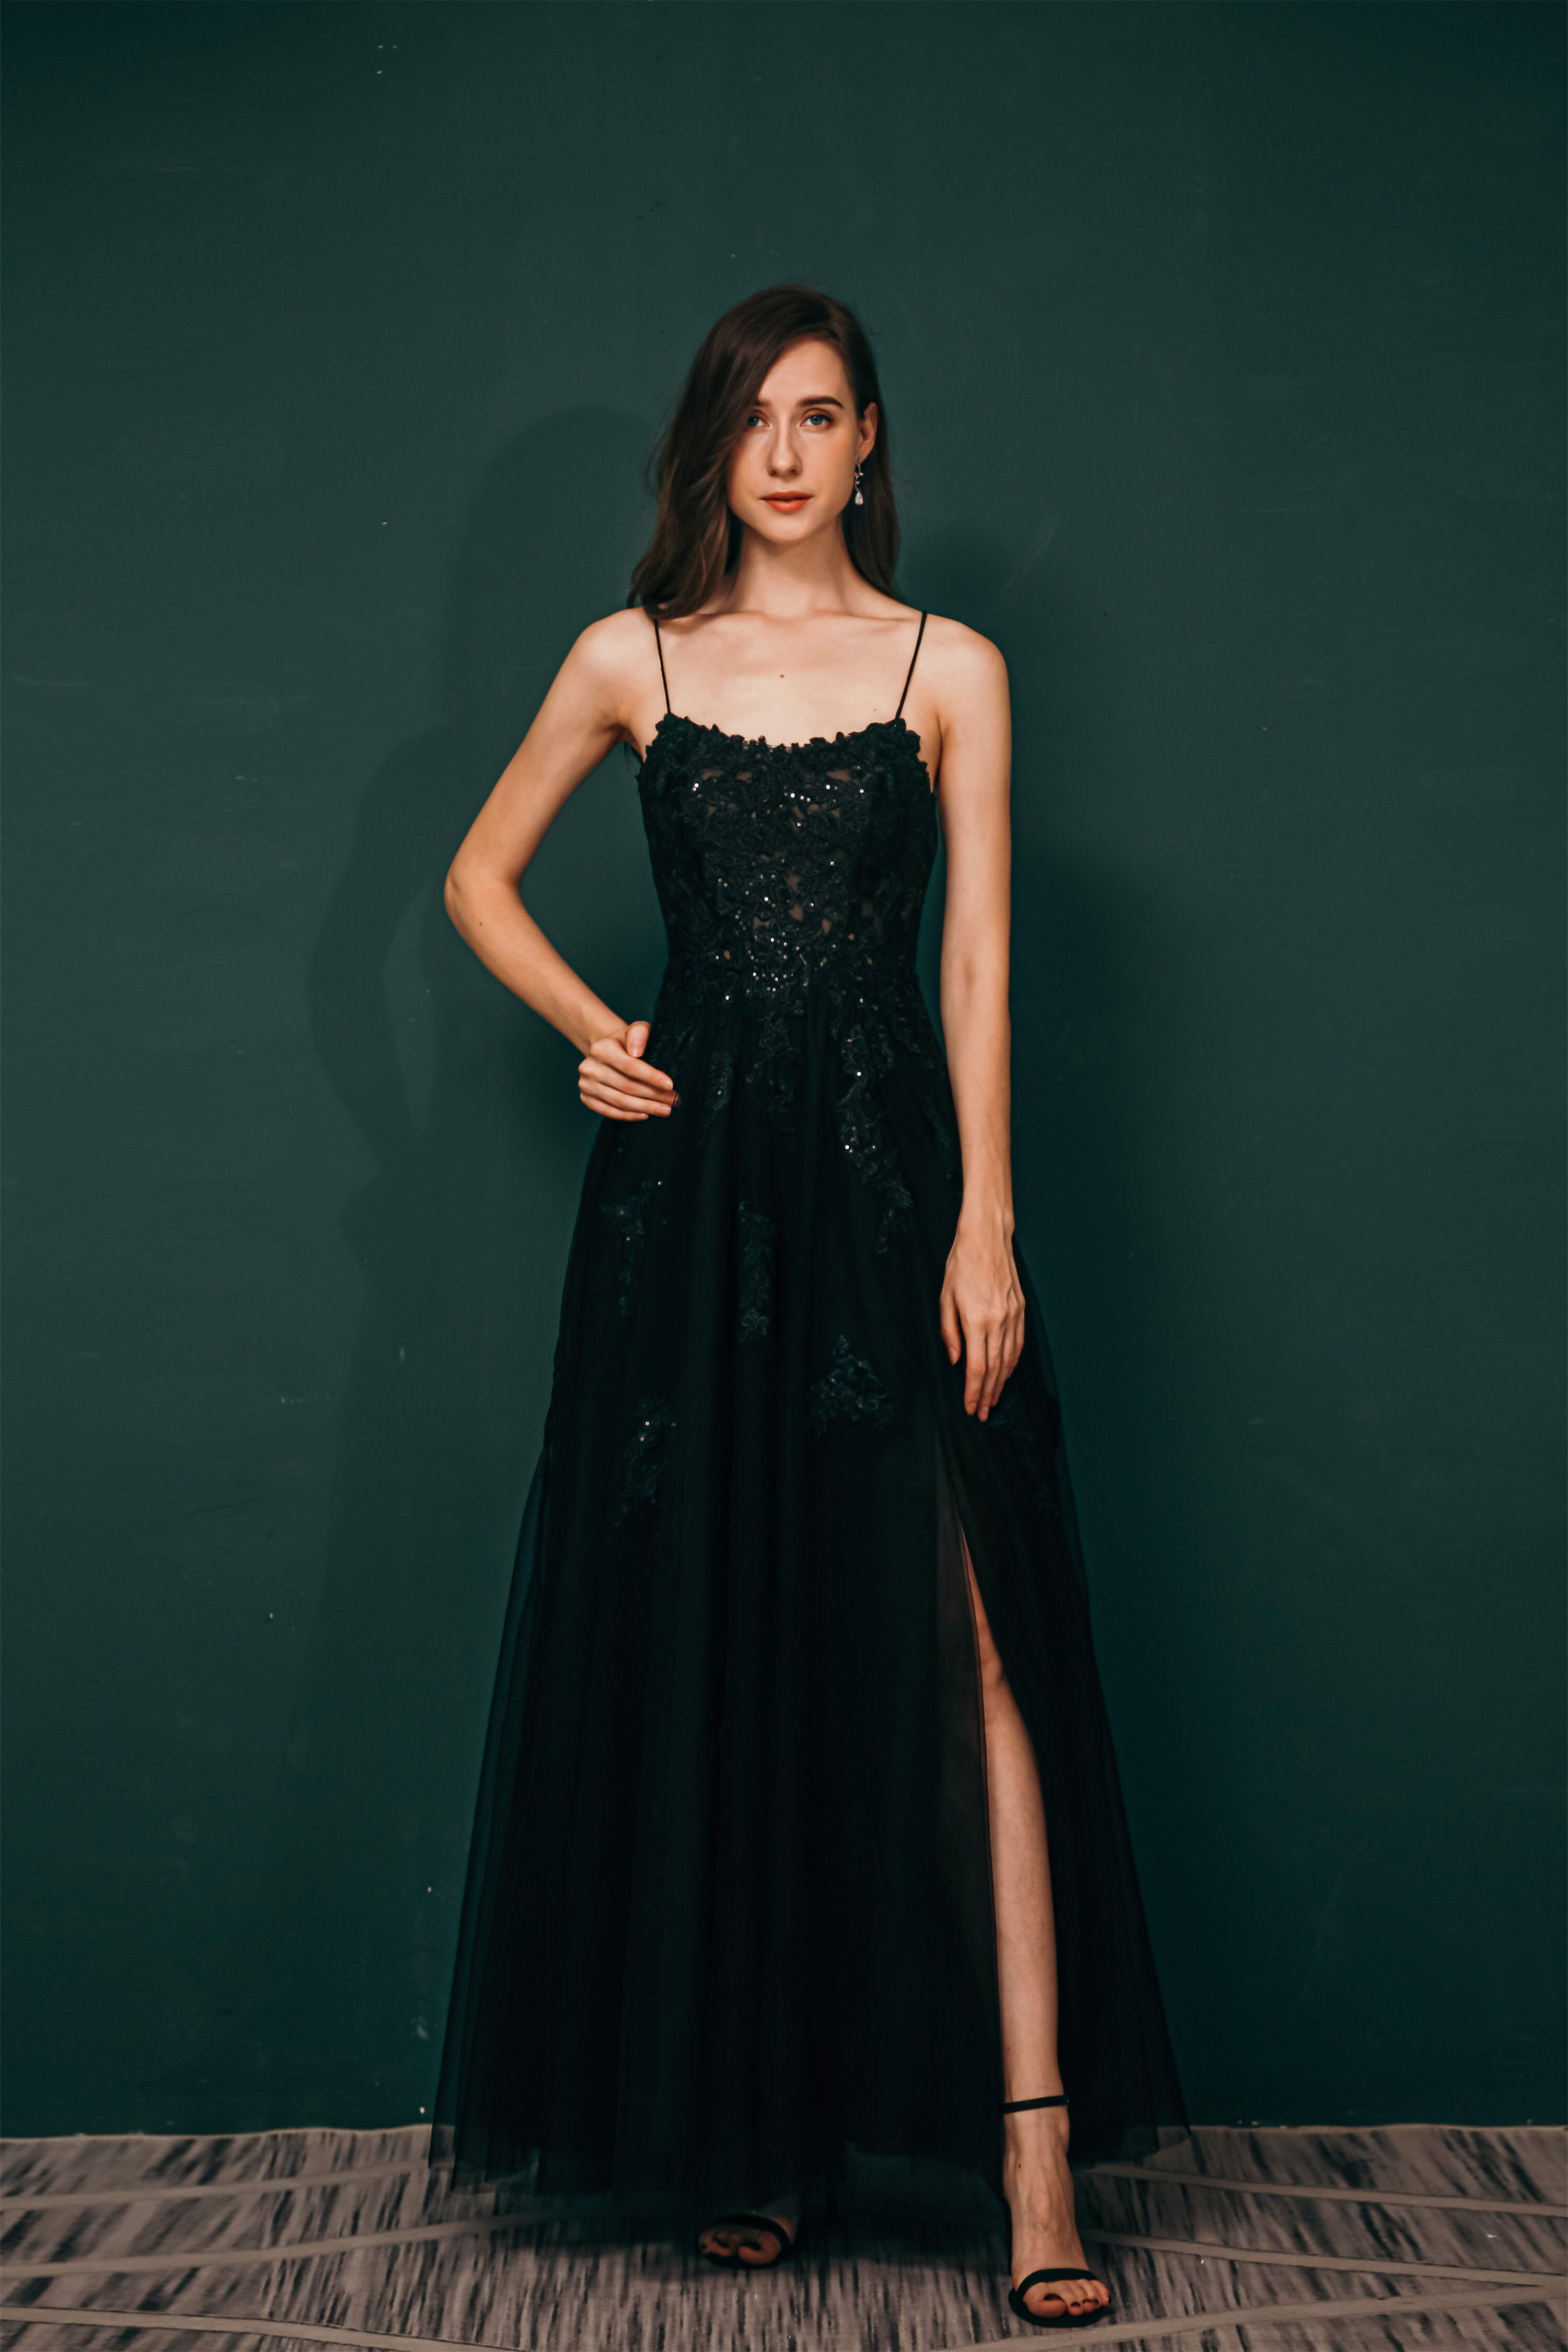 Party Dress Classy Elegant, A-line Lace Appliques Long Prom Dresses